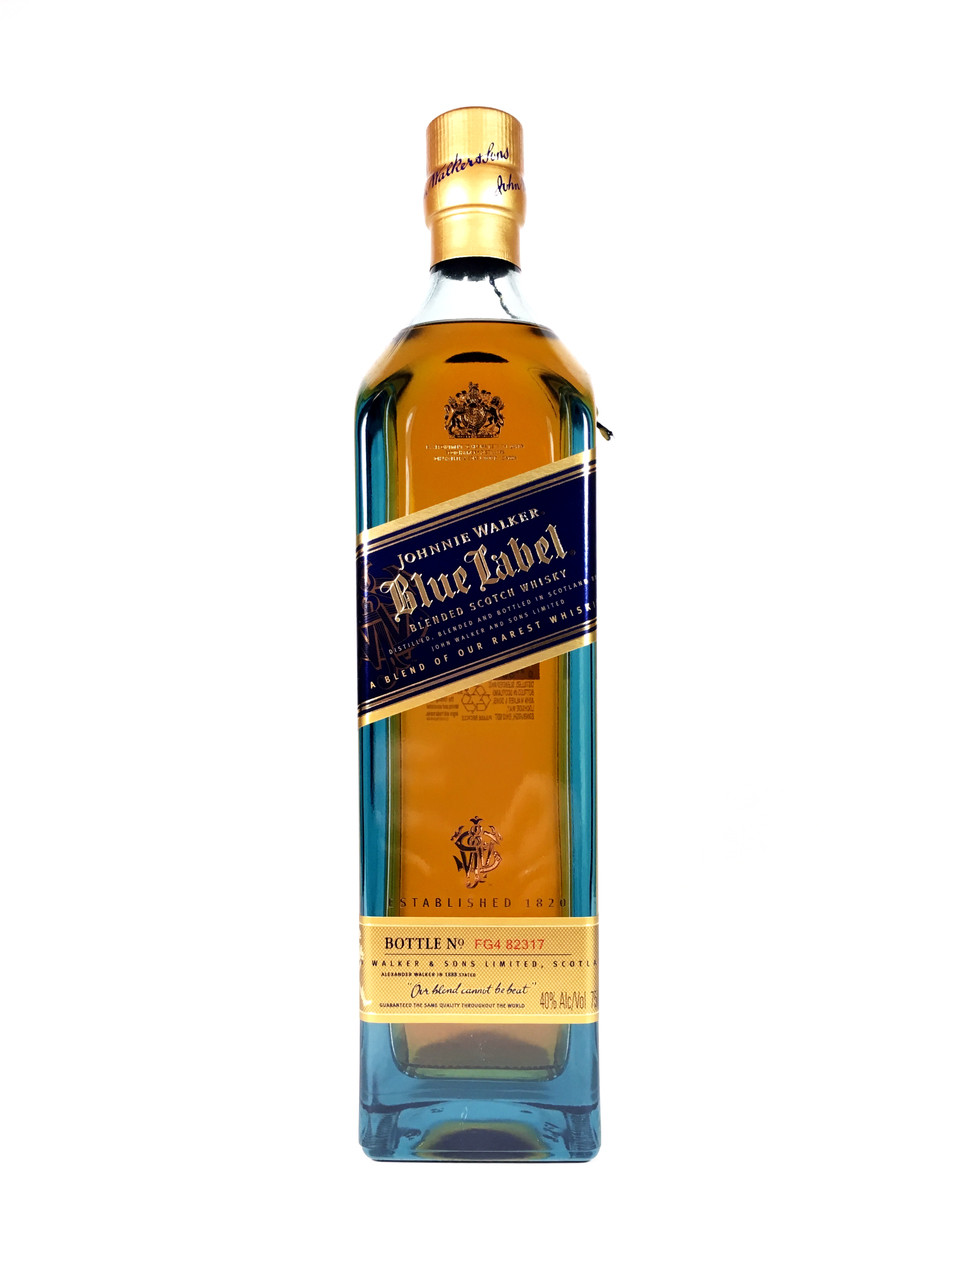 Johnnie Walker Blue Label The Whisky Shop